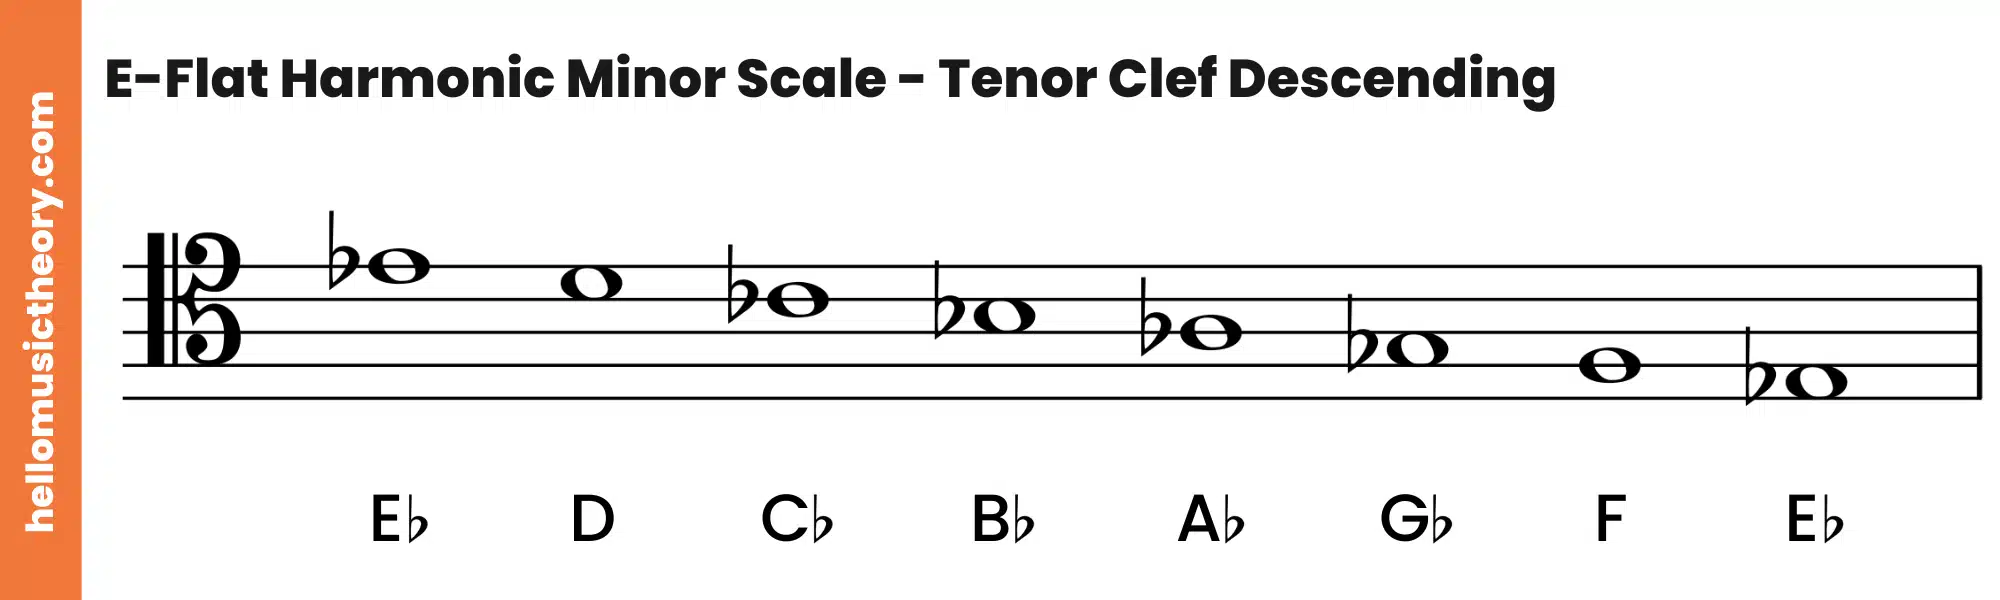 E-Flat Harmonic Minor Scale Tenor Clef Descending